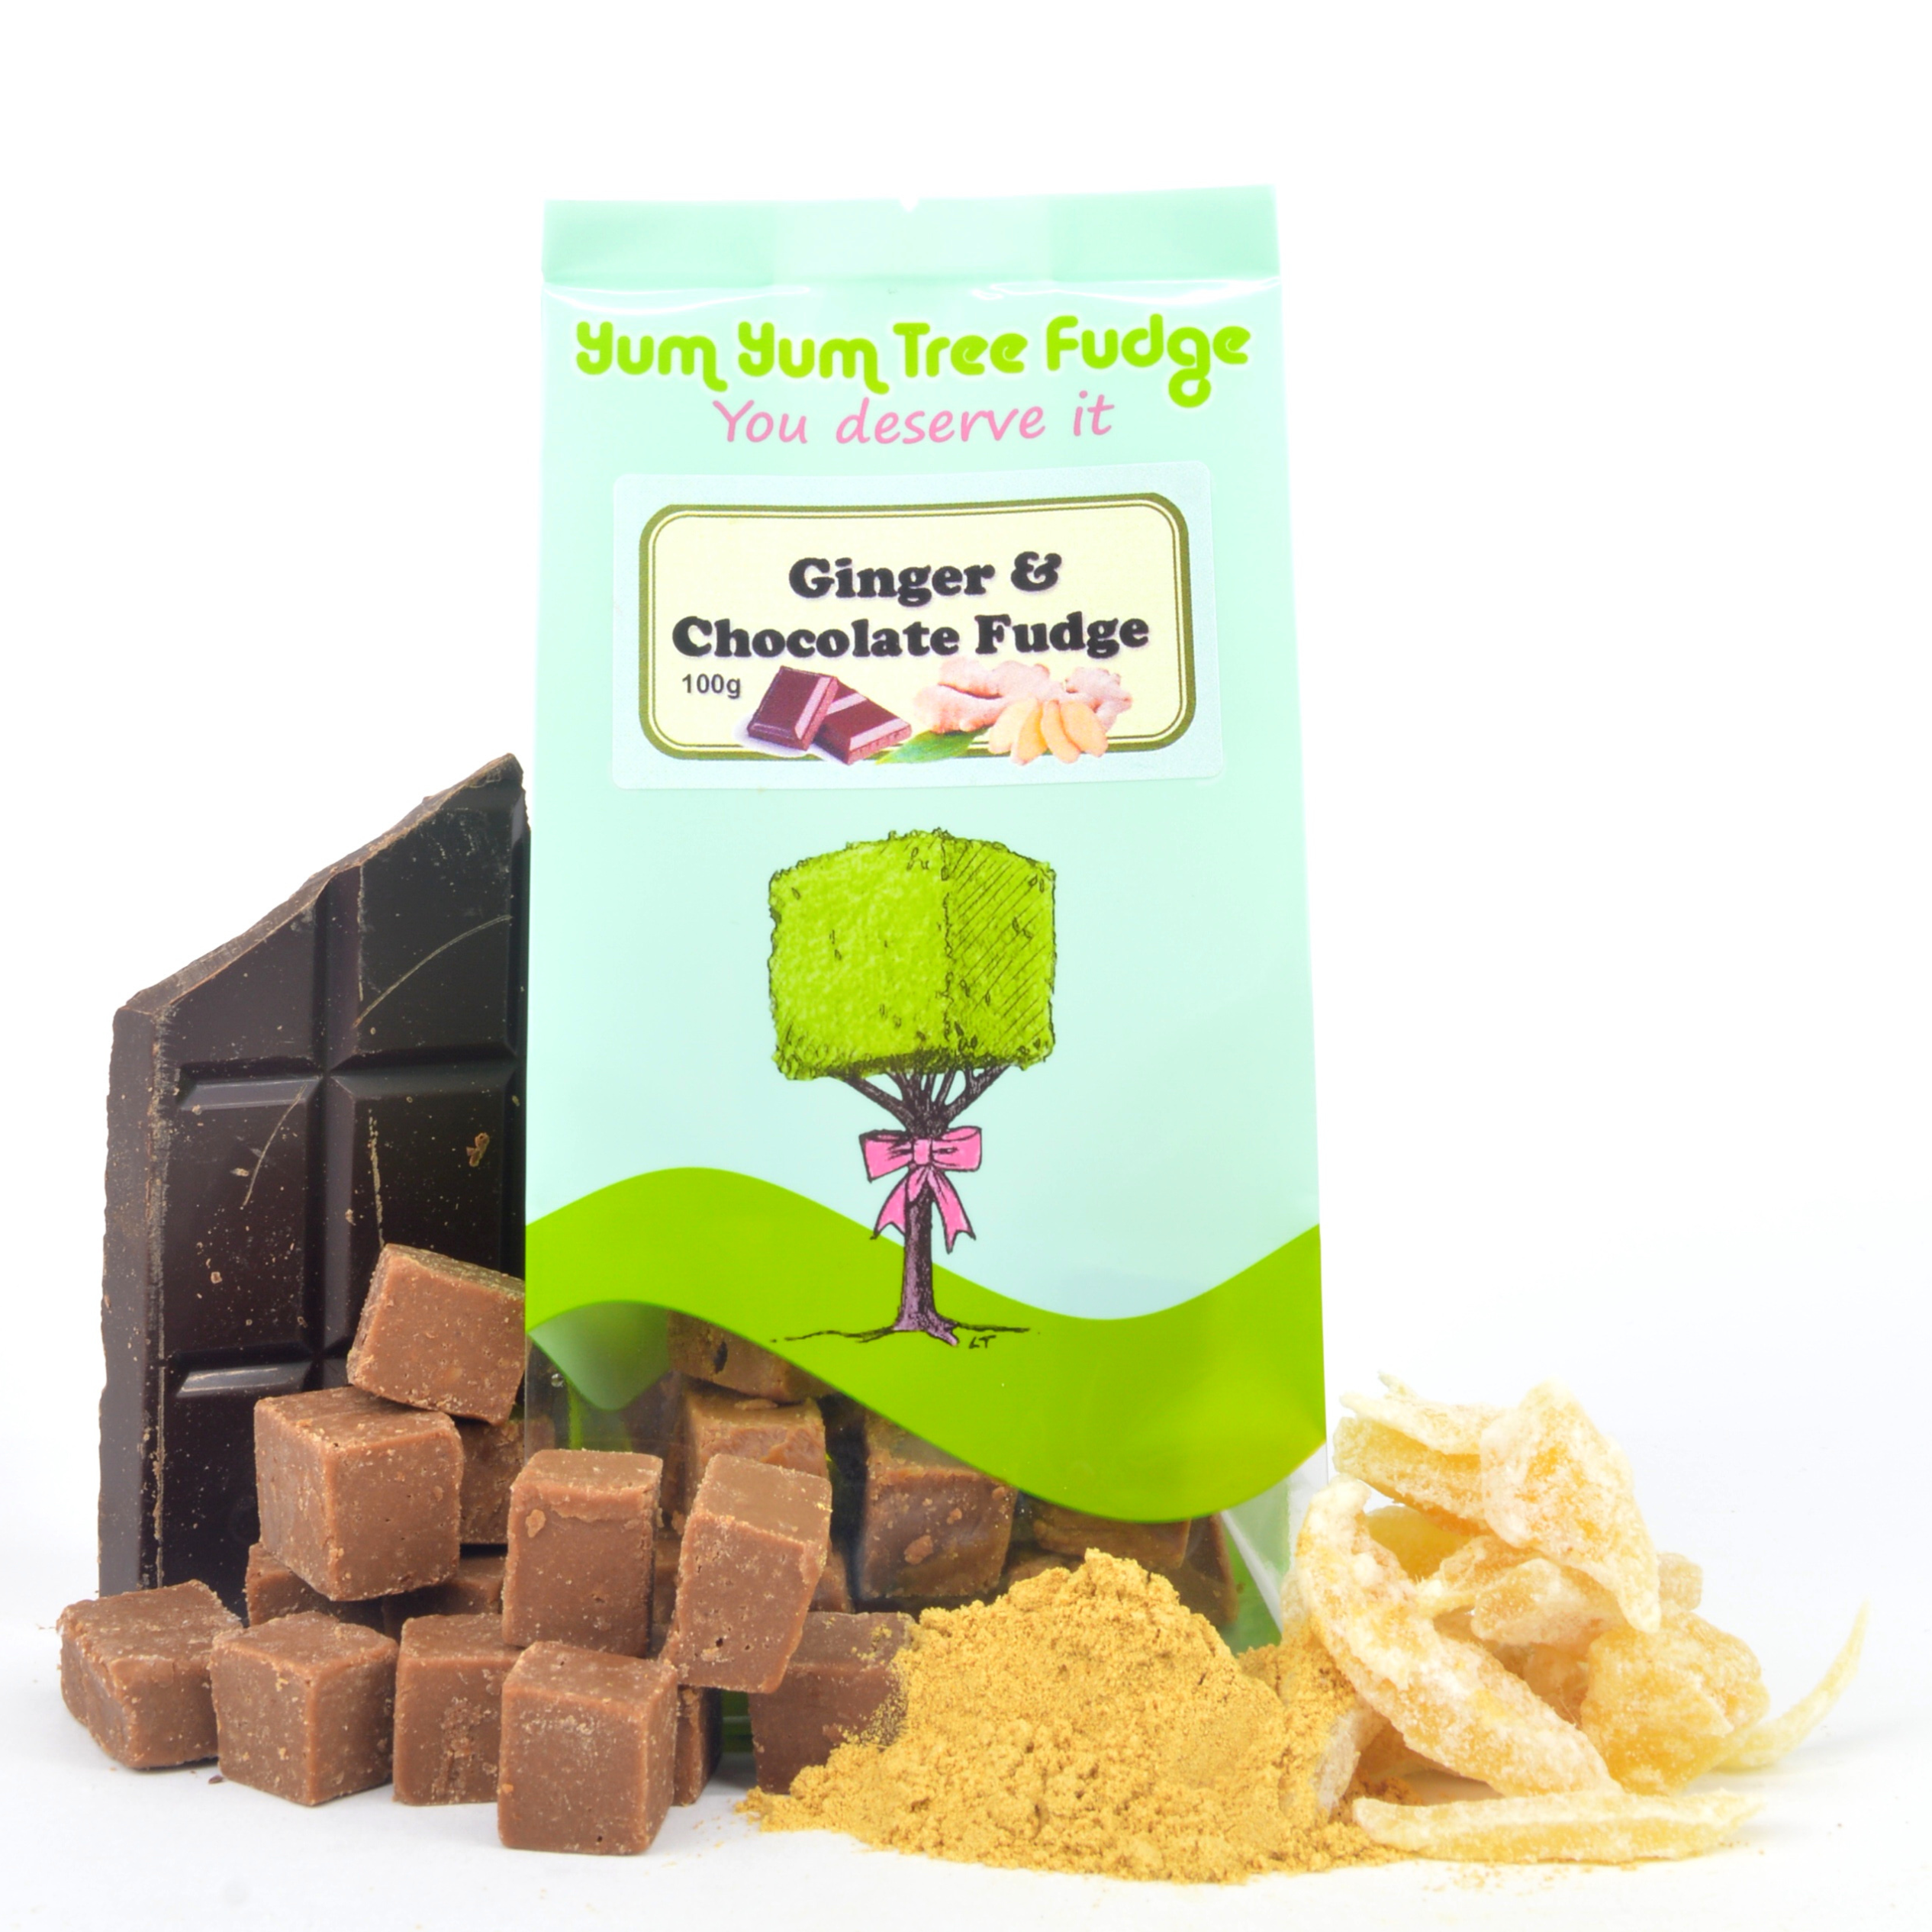 Ginger & Chocolate Fudge by Yum Yum Tree Fudge